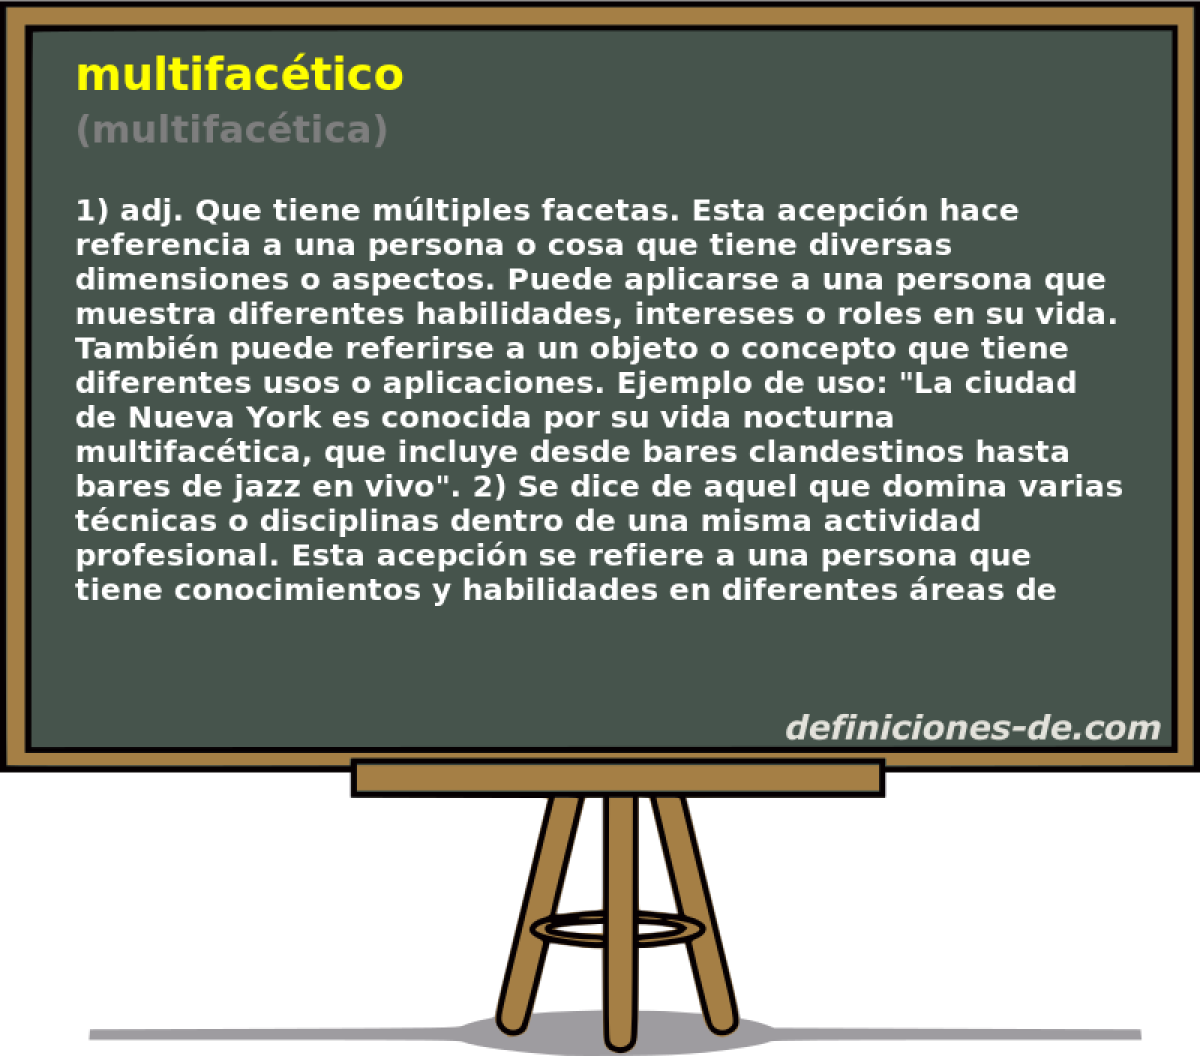 multifactico (multifactica)